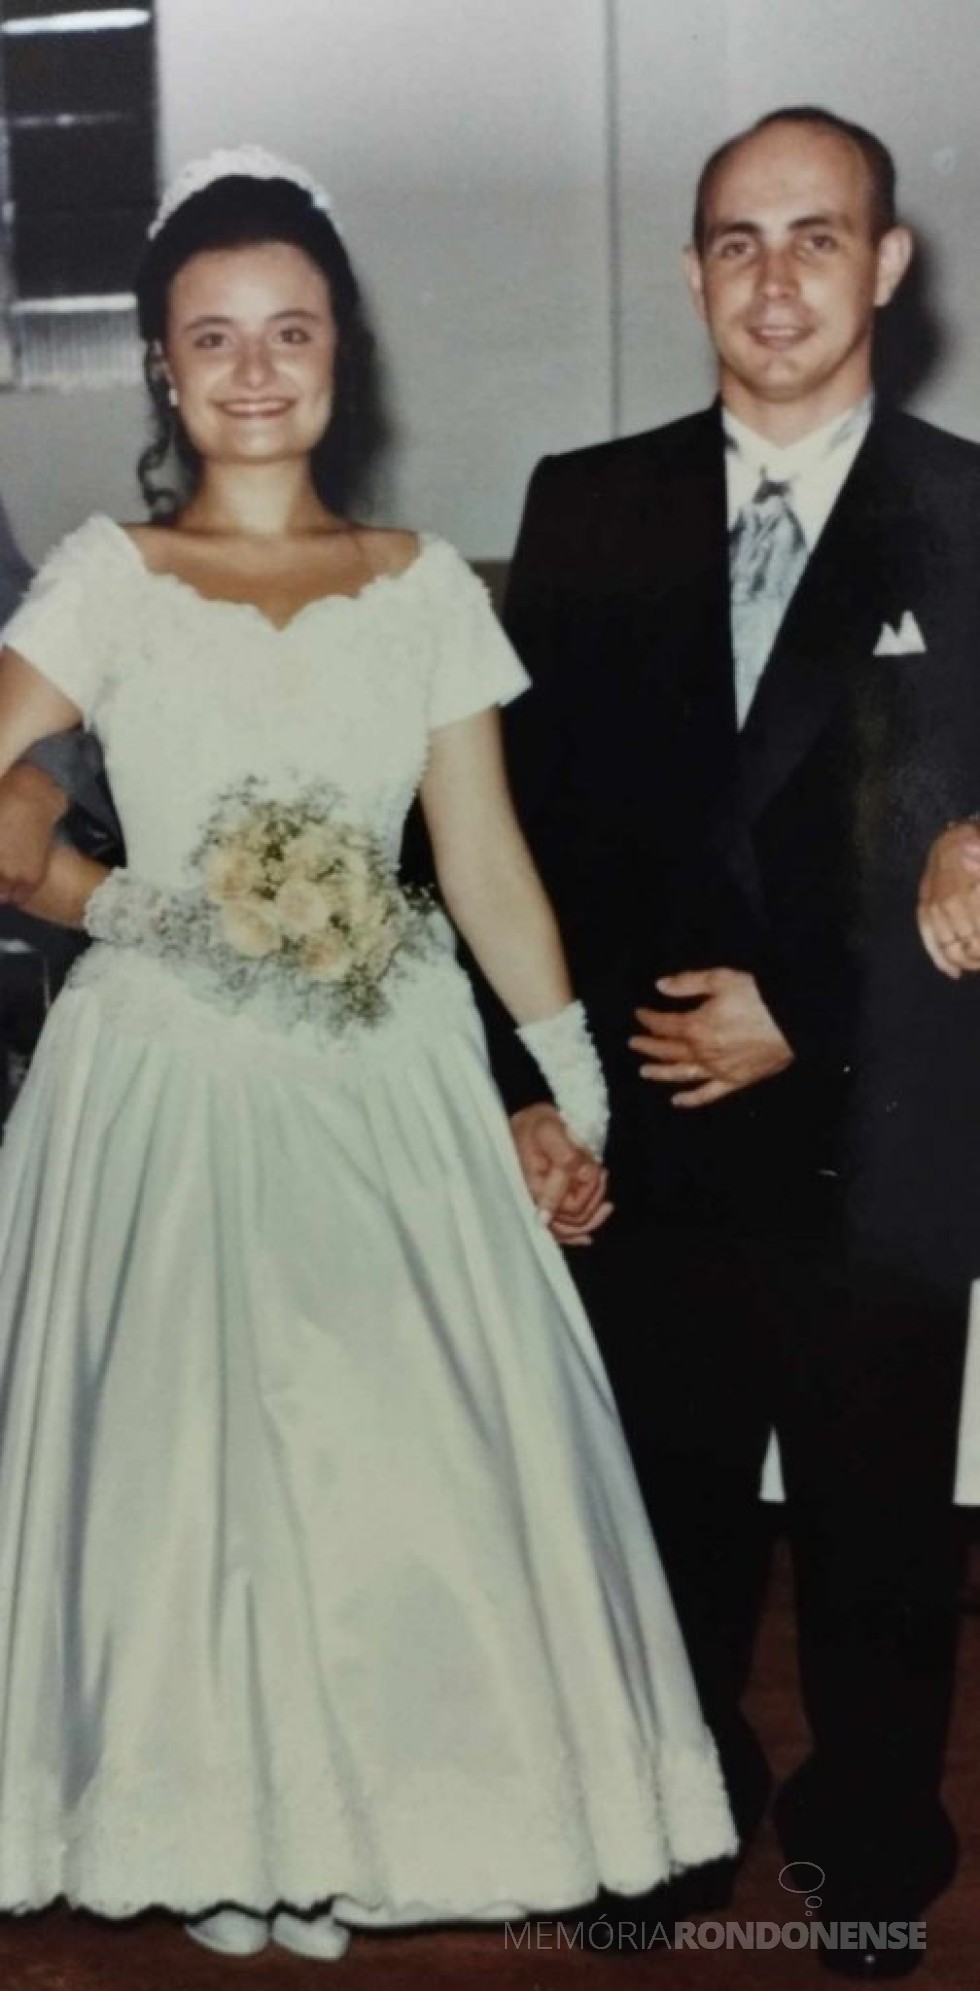 || Noivos Cláudia Cristina Wust e Sergio Casarotto que se casaram emn fevereiro de 1996.
Imagem: Acervo Lidiane Casarotto Kotz - FOTO 4 - 